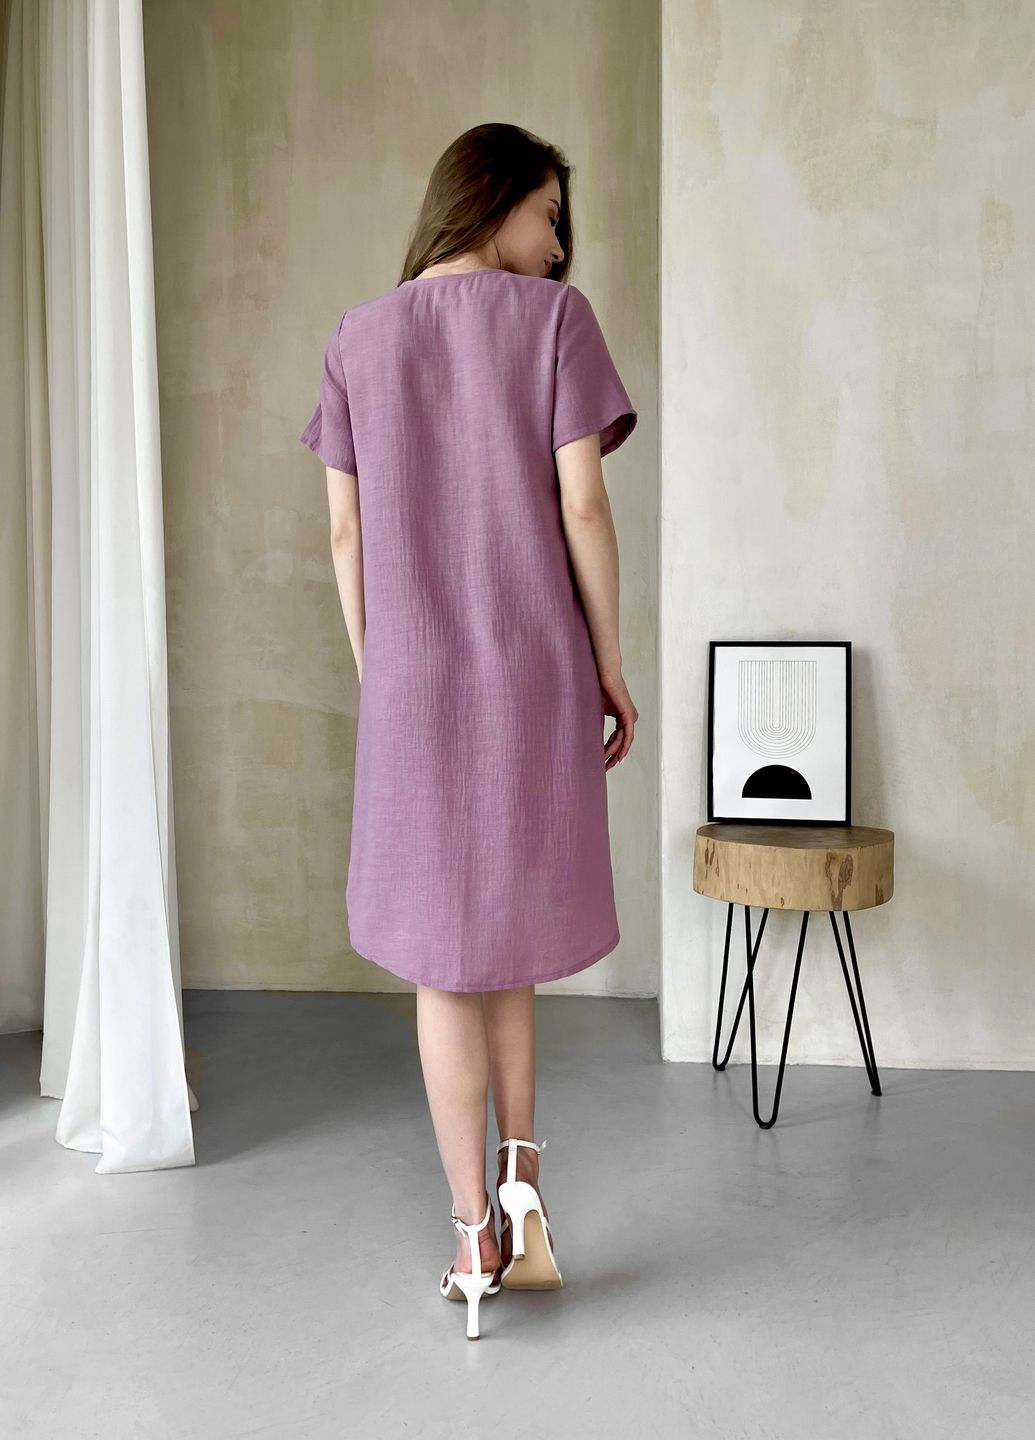 Купить Женское платье до колена однотонное с коротким рукавом из льна розовое Merlini Престо 700000182, размер 42-44 (S-M) в интернет-магазине